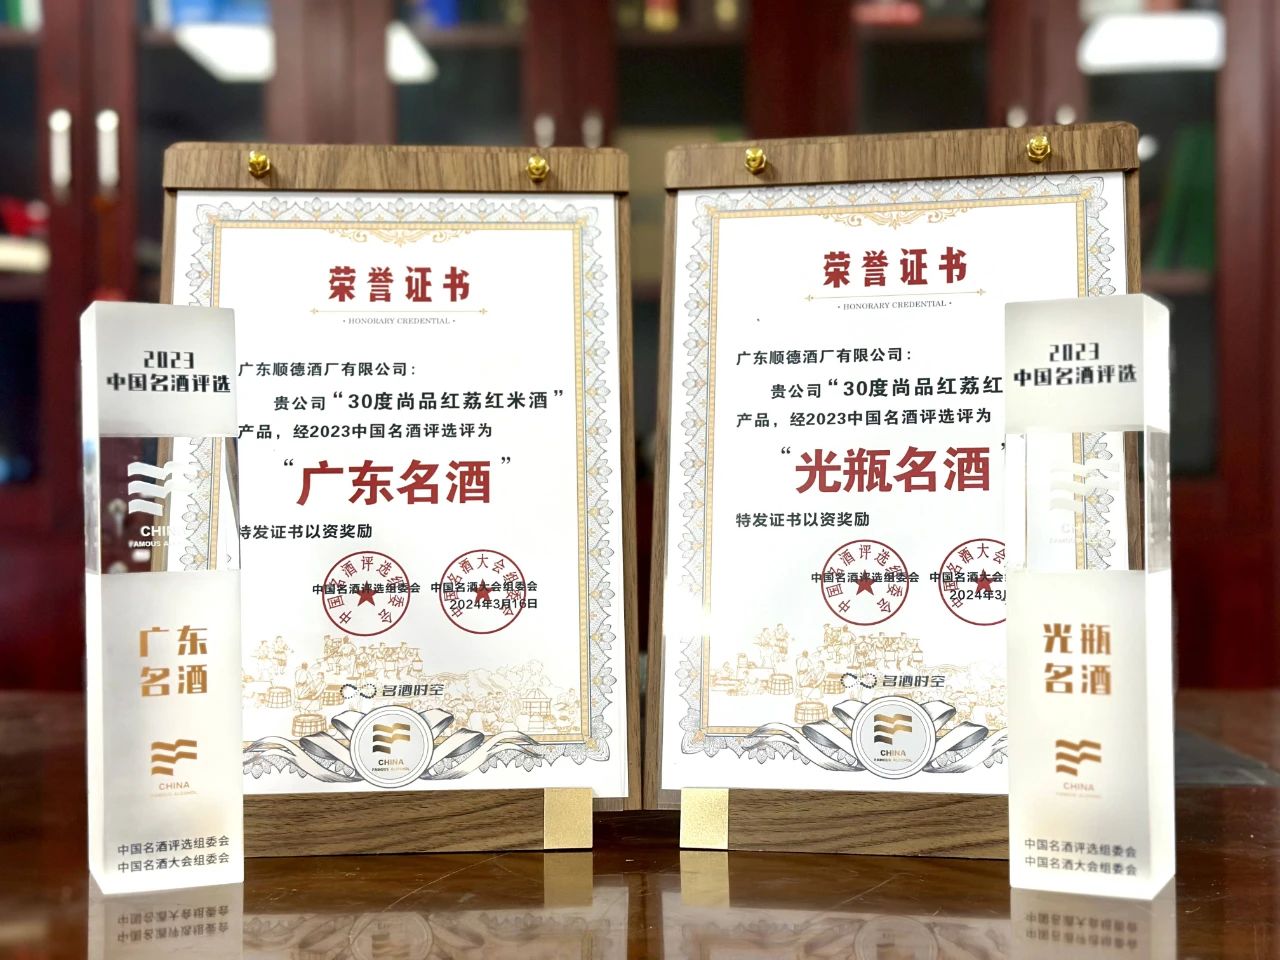 30度尚品红荔红米酒获中国名酒评选两项大奖